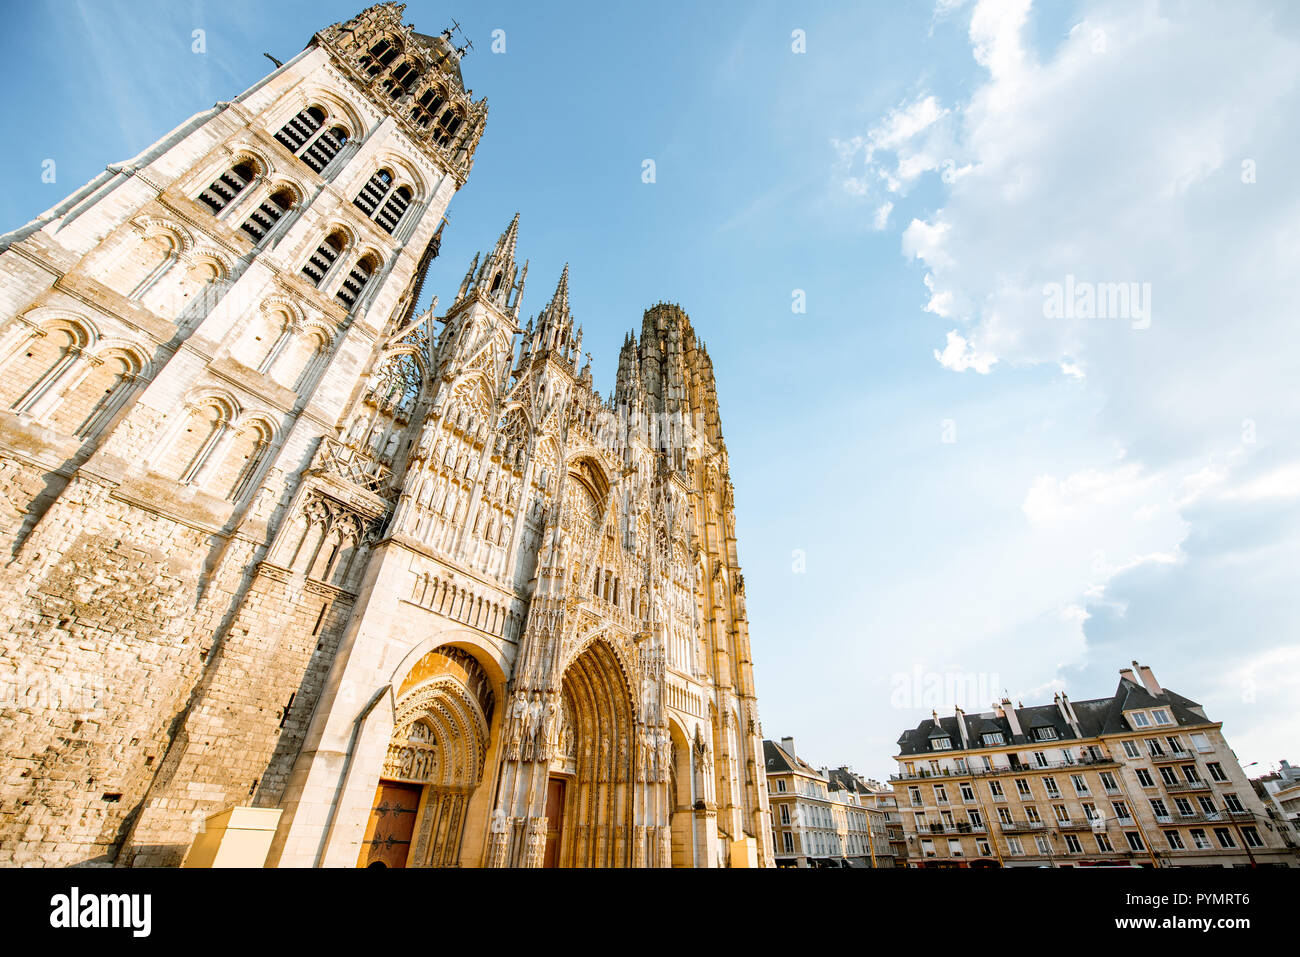 Vista desde abajo en la fachada de la famosa catedral gótica de Rouen, en la ciudad de Rouen, la capital de la región de Normandía en Francia Foto de stock